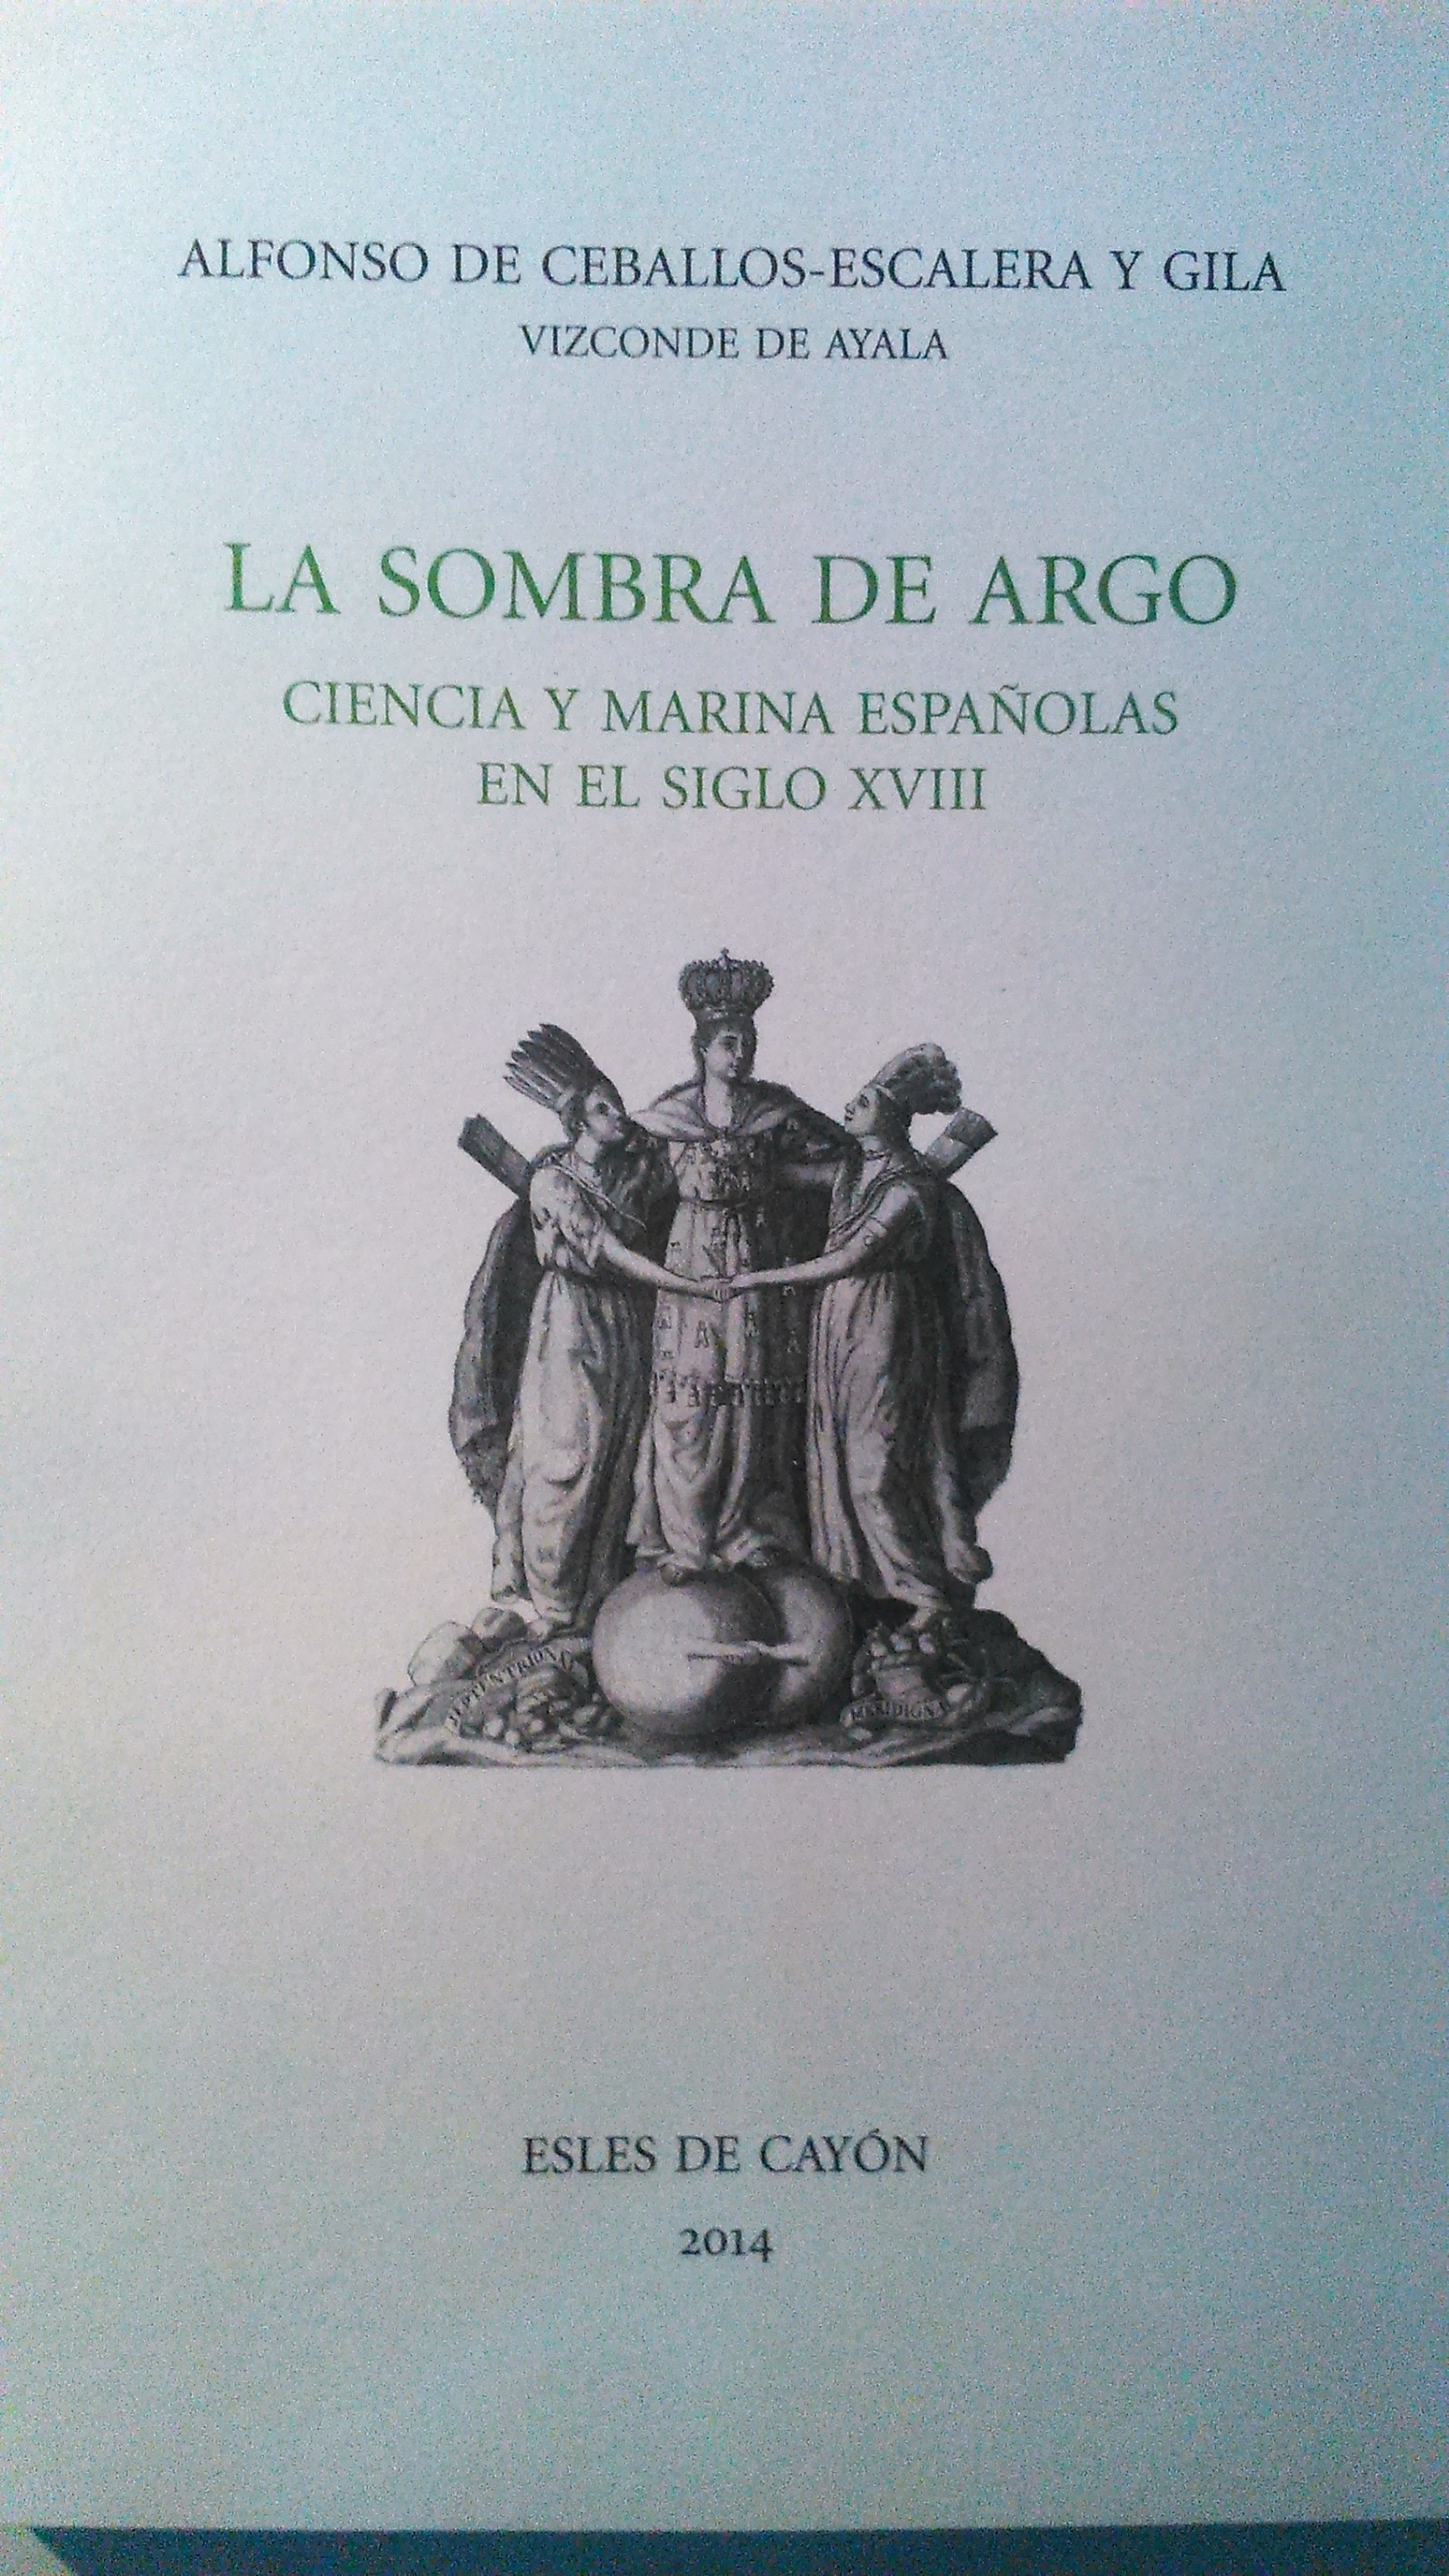 La sombra de Argo "Ciencia y marina española en el siglo XVIII"